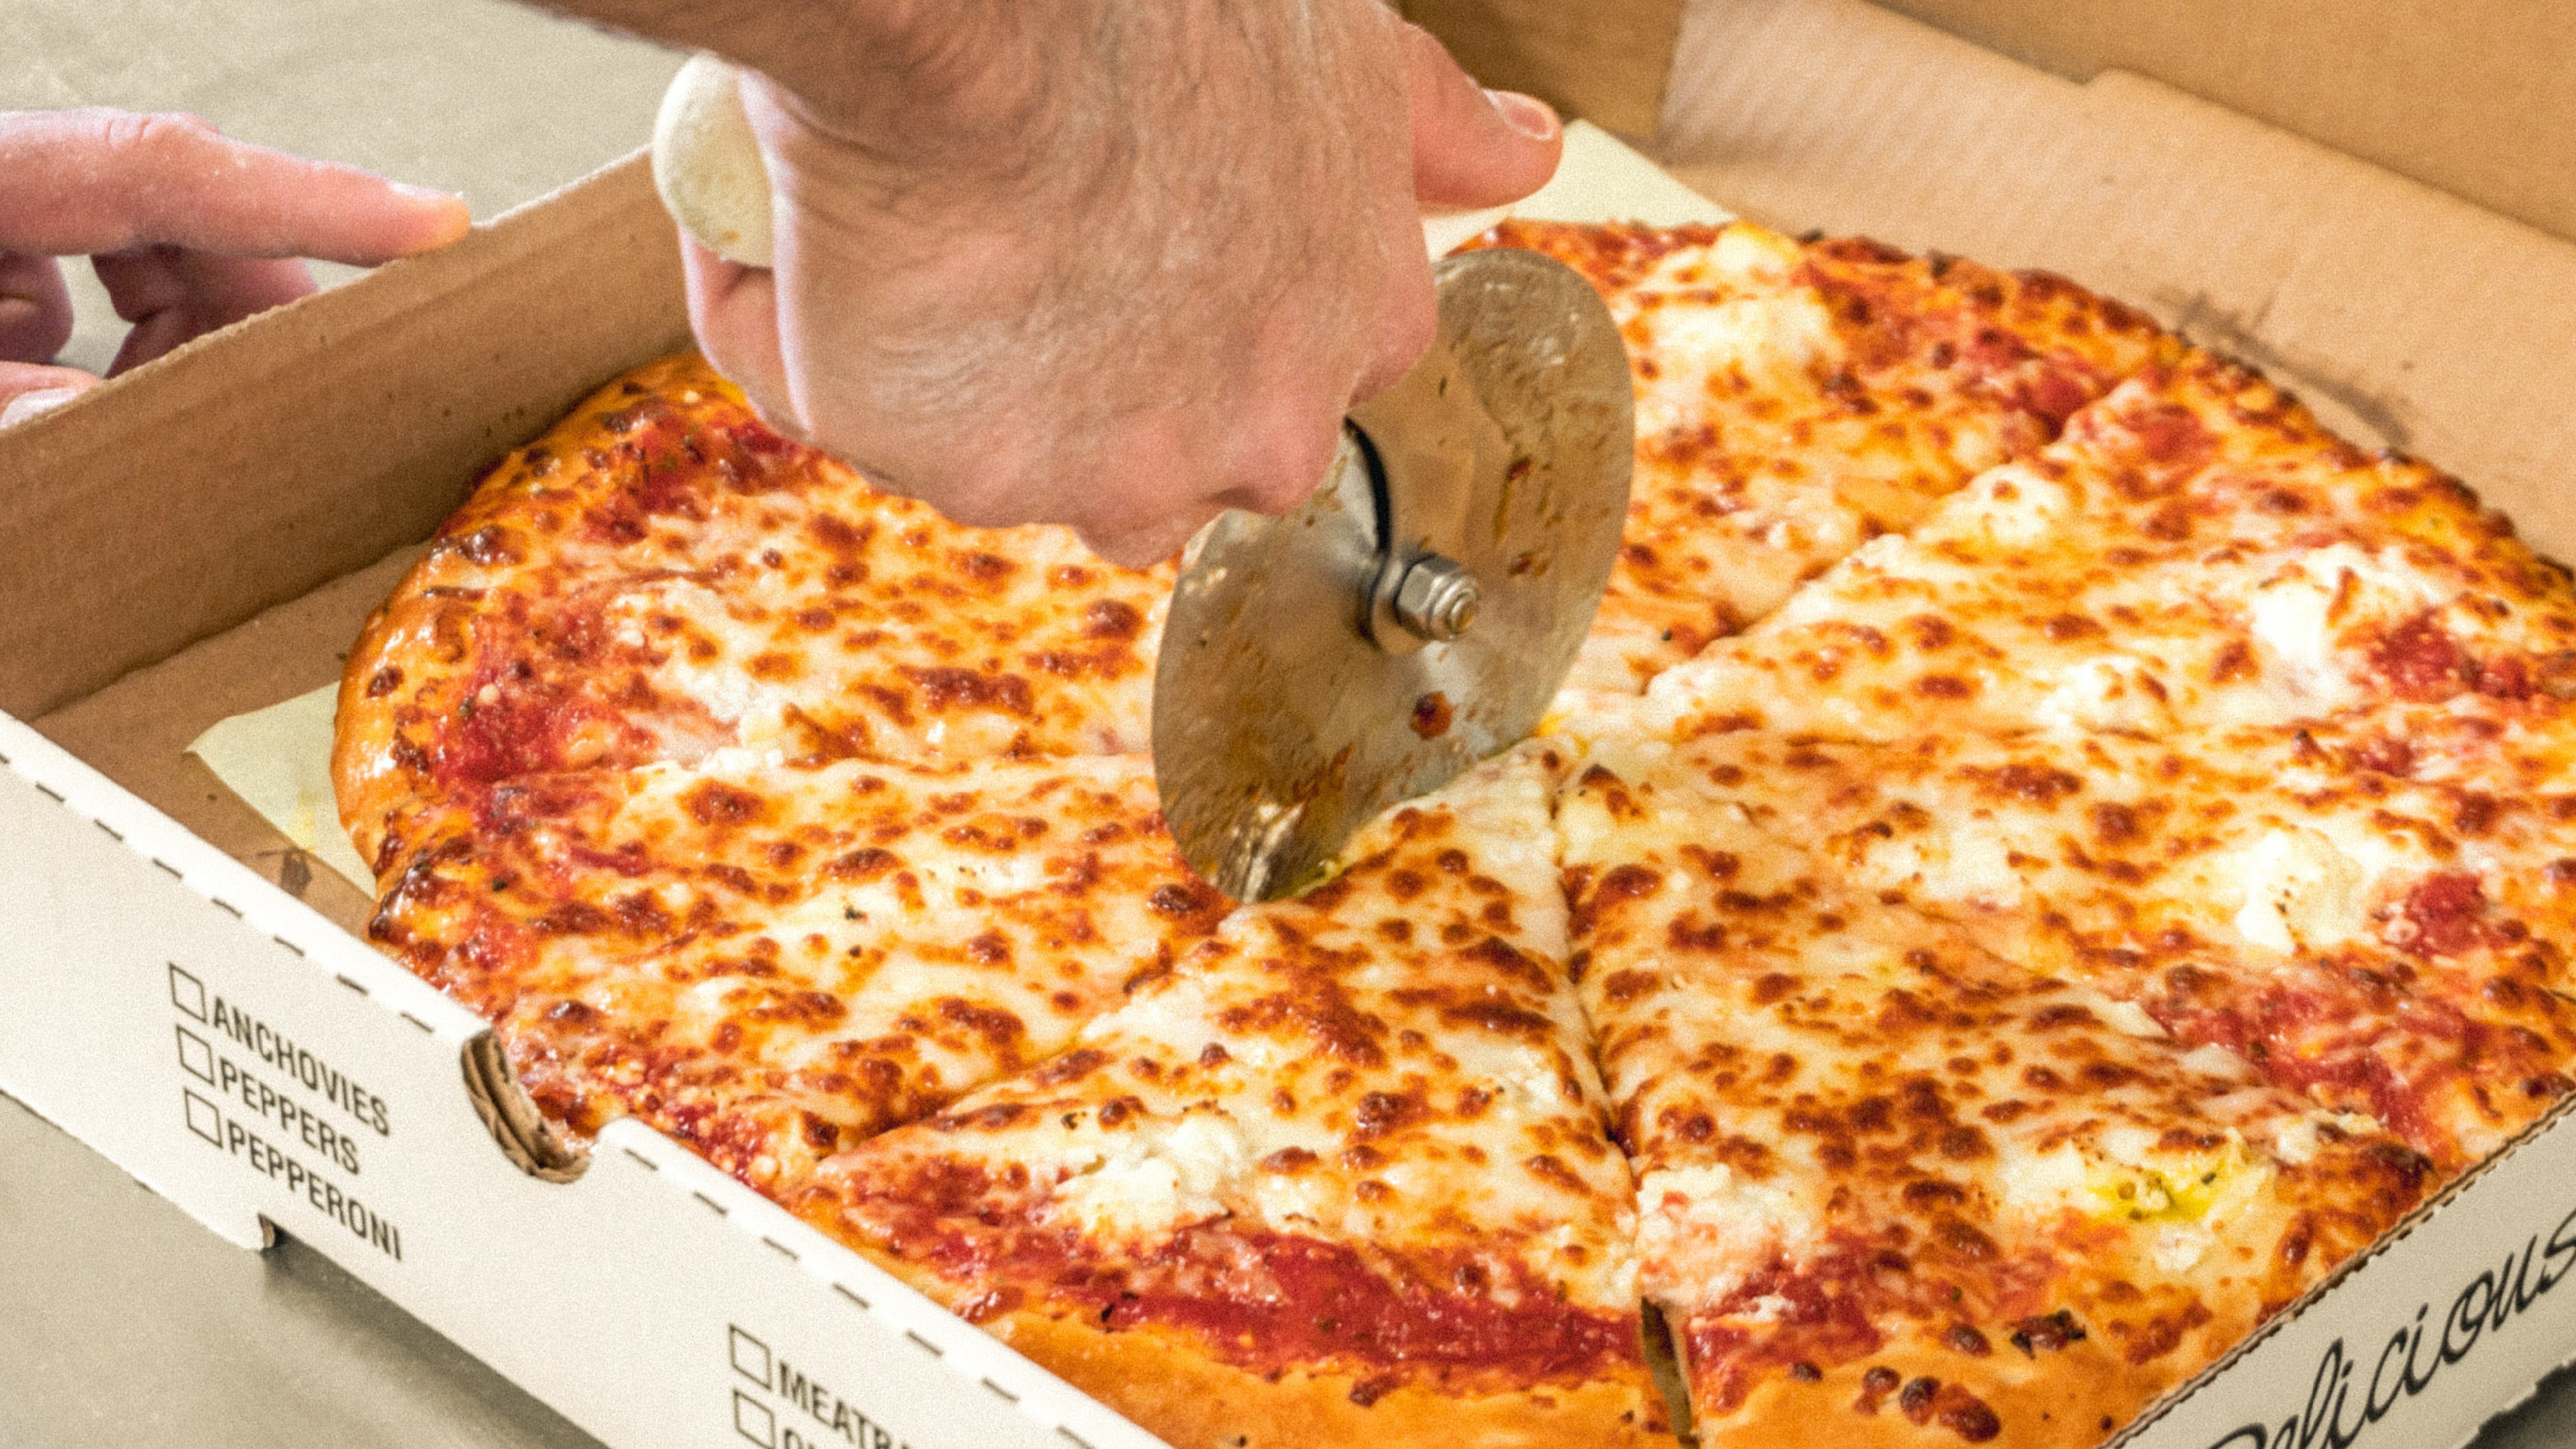 NY Giant Pizza hero